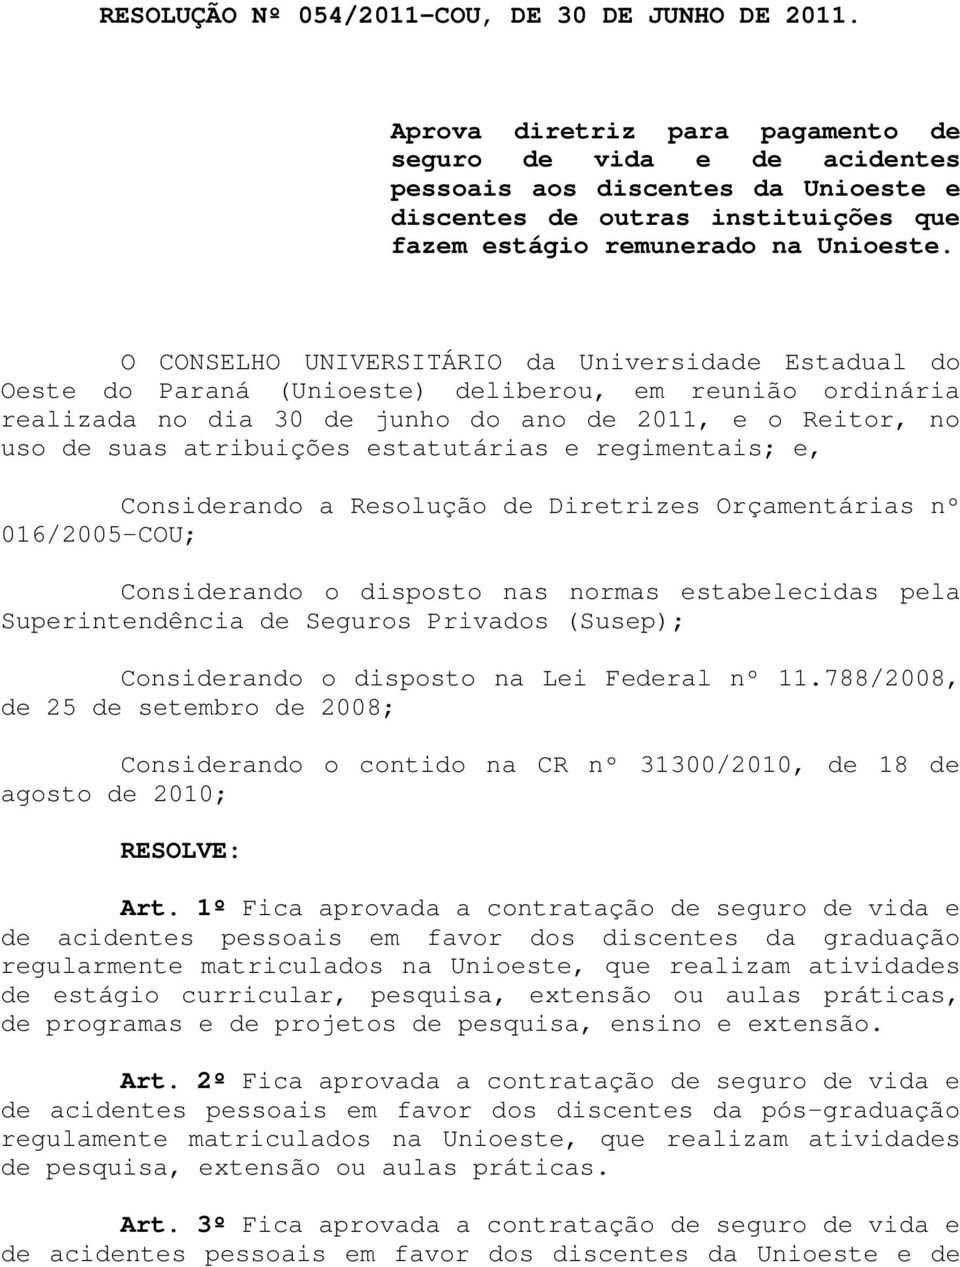 O CONSELHO UNIVERSITÁRIO da Universidade Estadual do Oeste do Paraná (Unioeste) deliberou, em reunião ordinária realizada no dia 30 de junho do ano de 2011, e o Reitor, no uso de suas atribuições